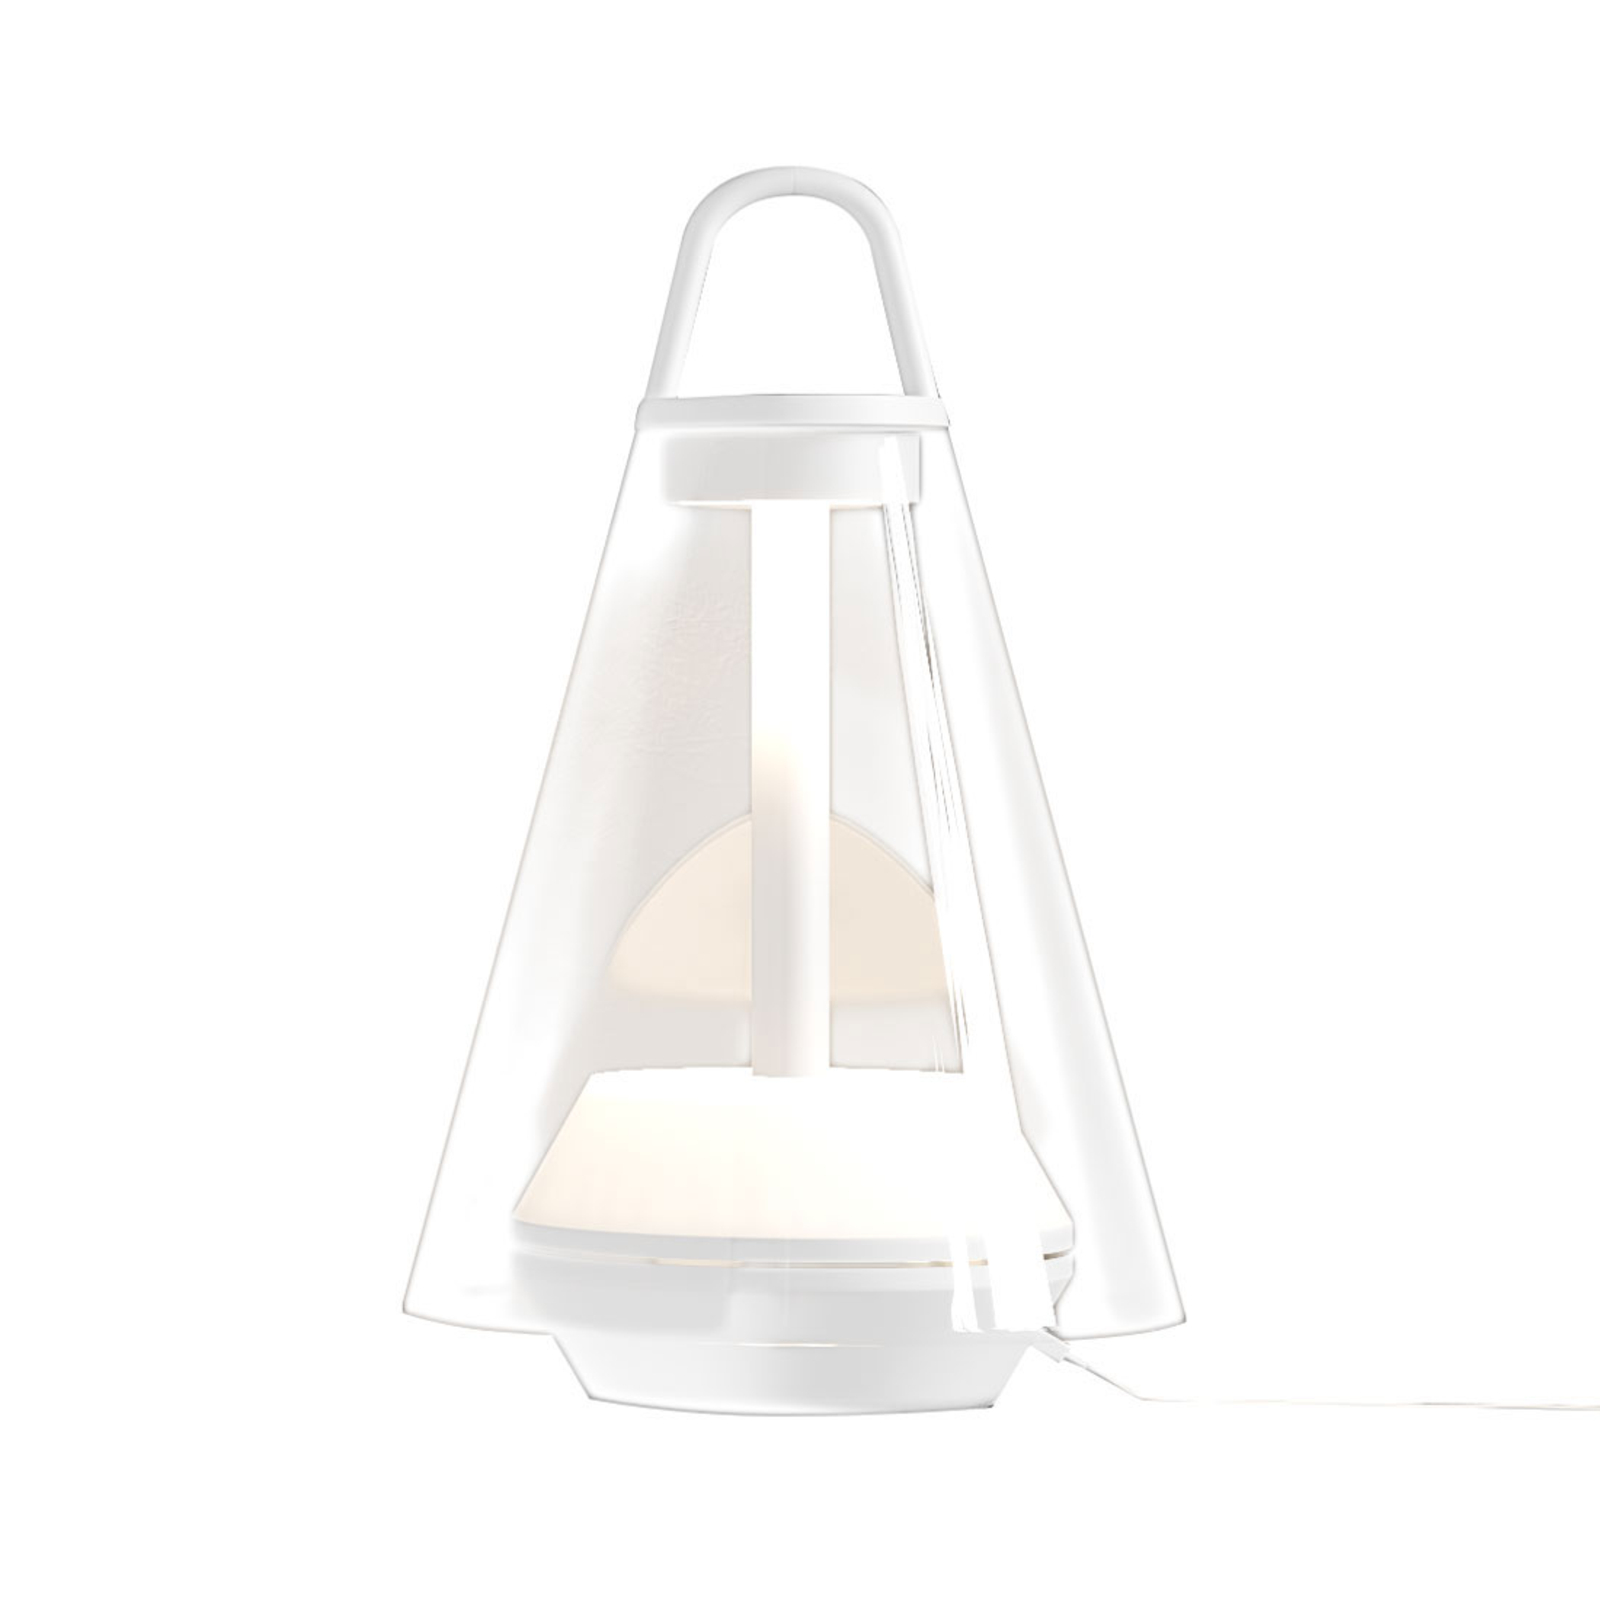 Prandina Shuttle tafellamp wit, glas helder